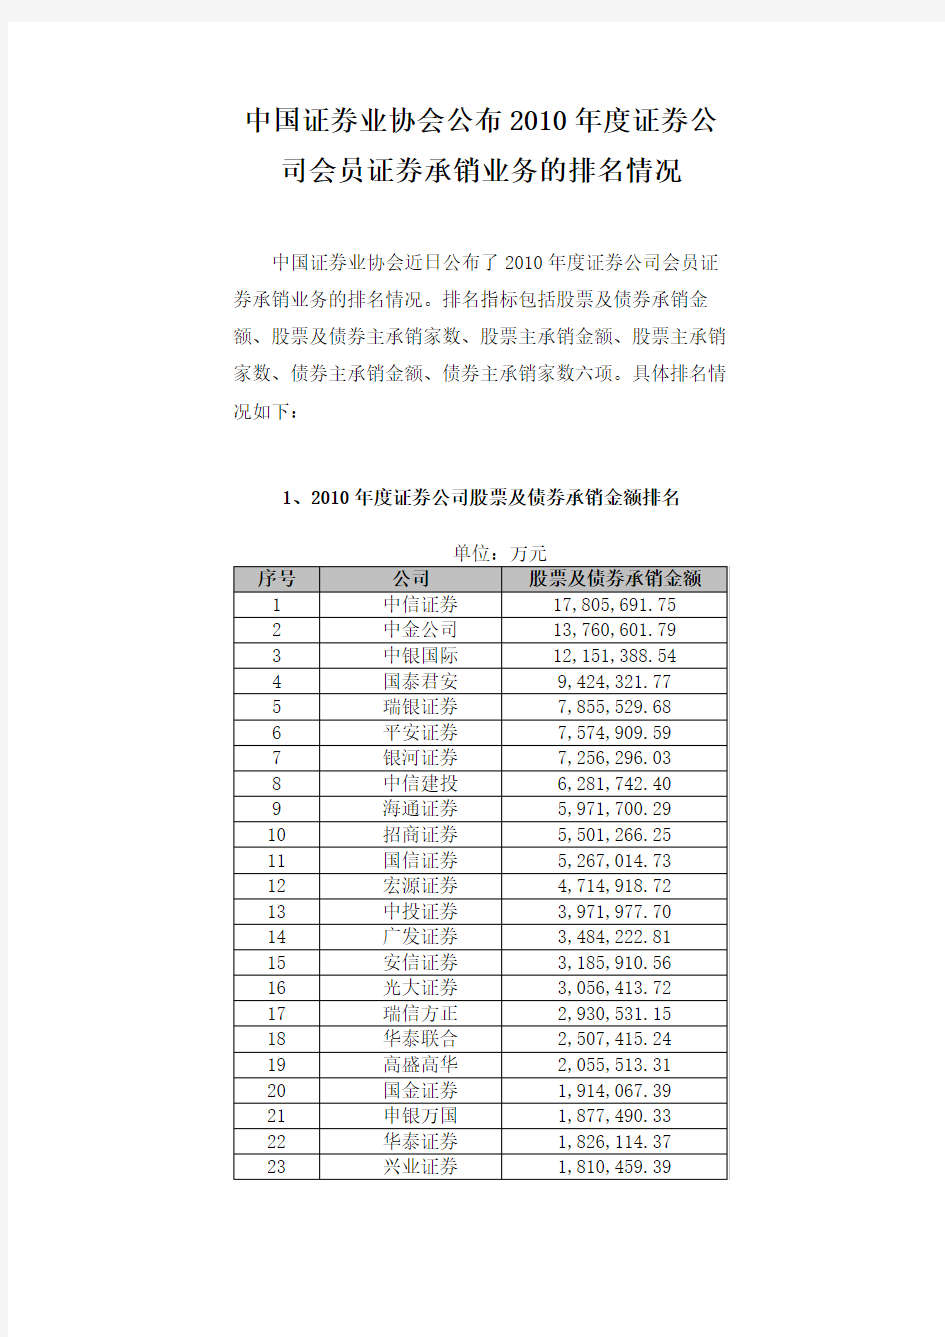 中国证券业协会公布2010年度证券公司会员证券承销业务的排名情况